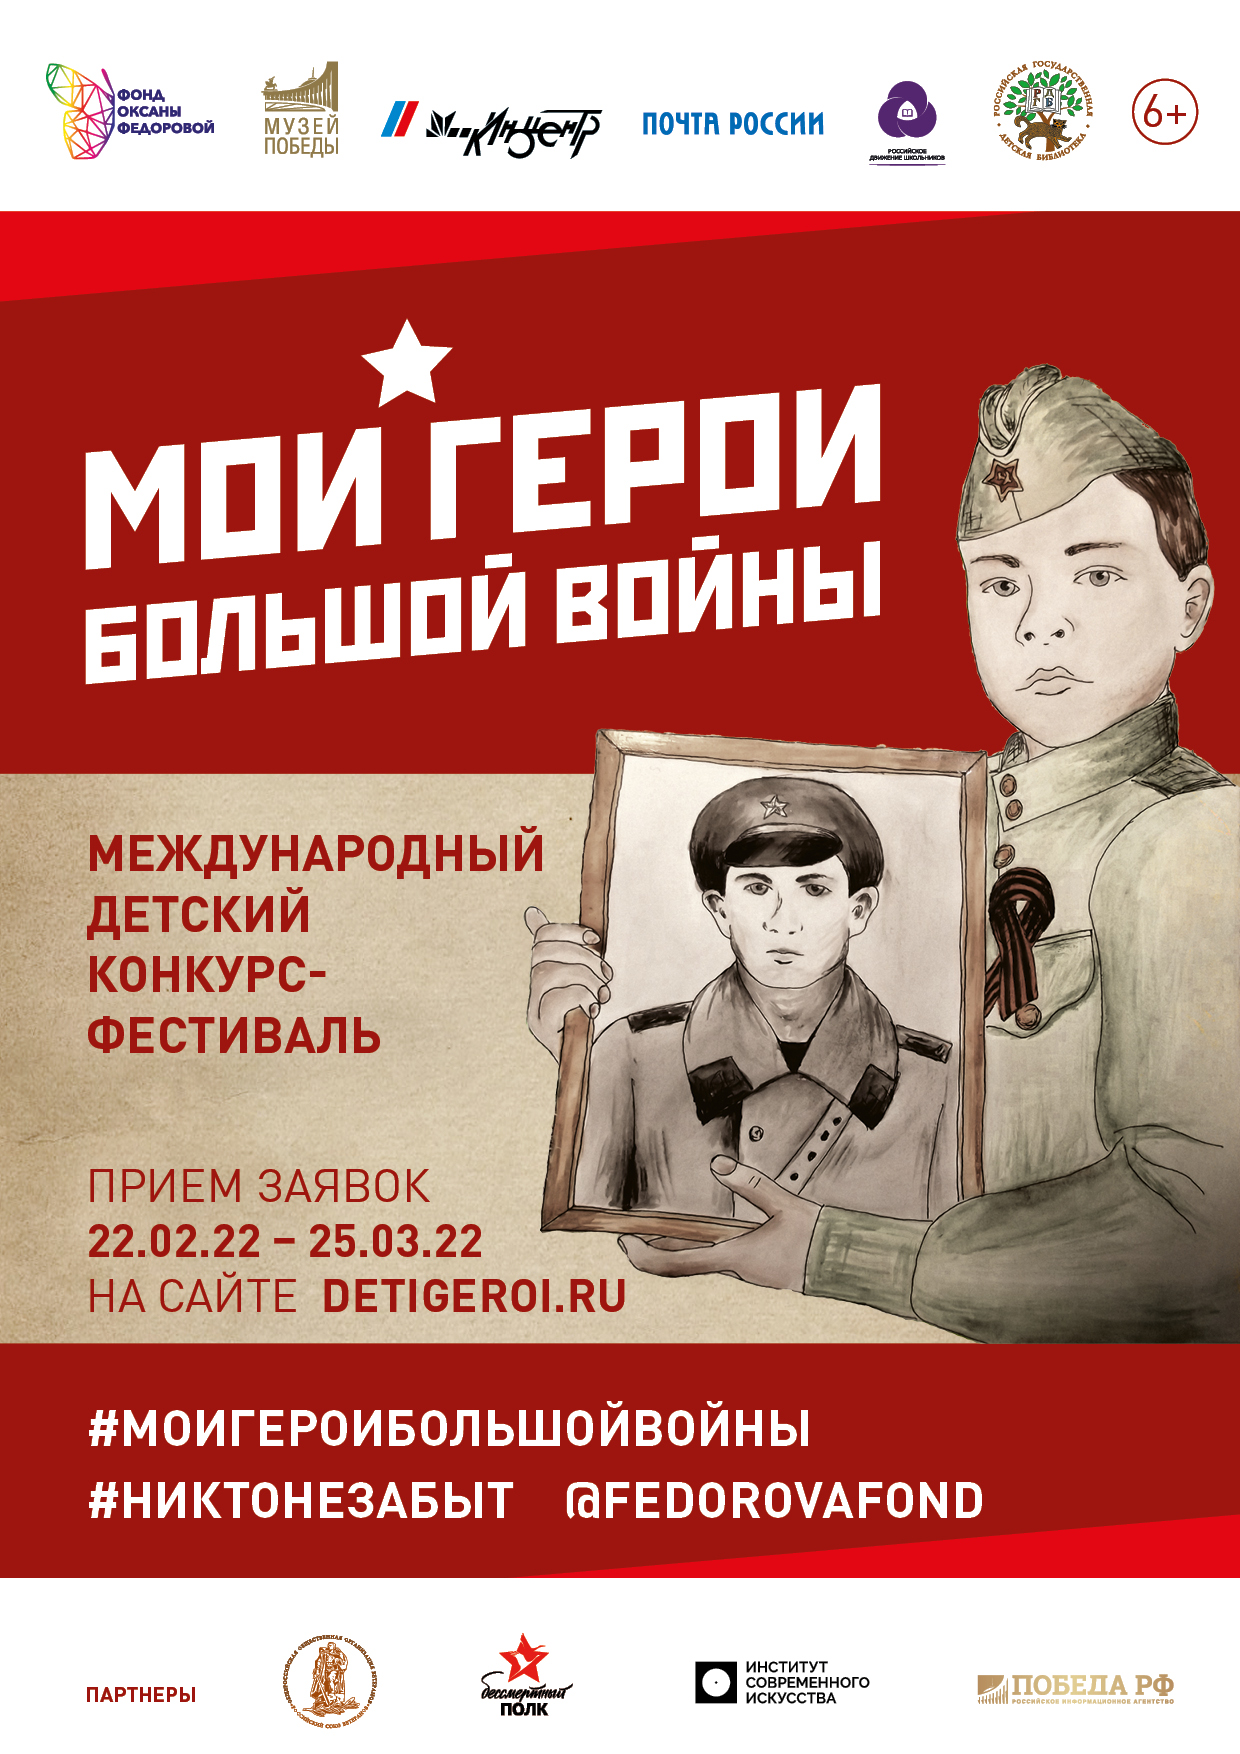 Юные таланты из Саратовской области могут принять участие в юбилейном конкурсе-фестивале «Мои герои большой войны» 